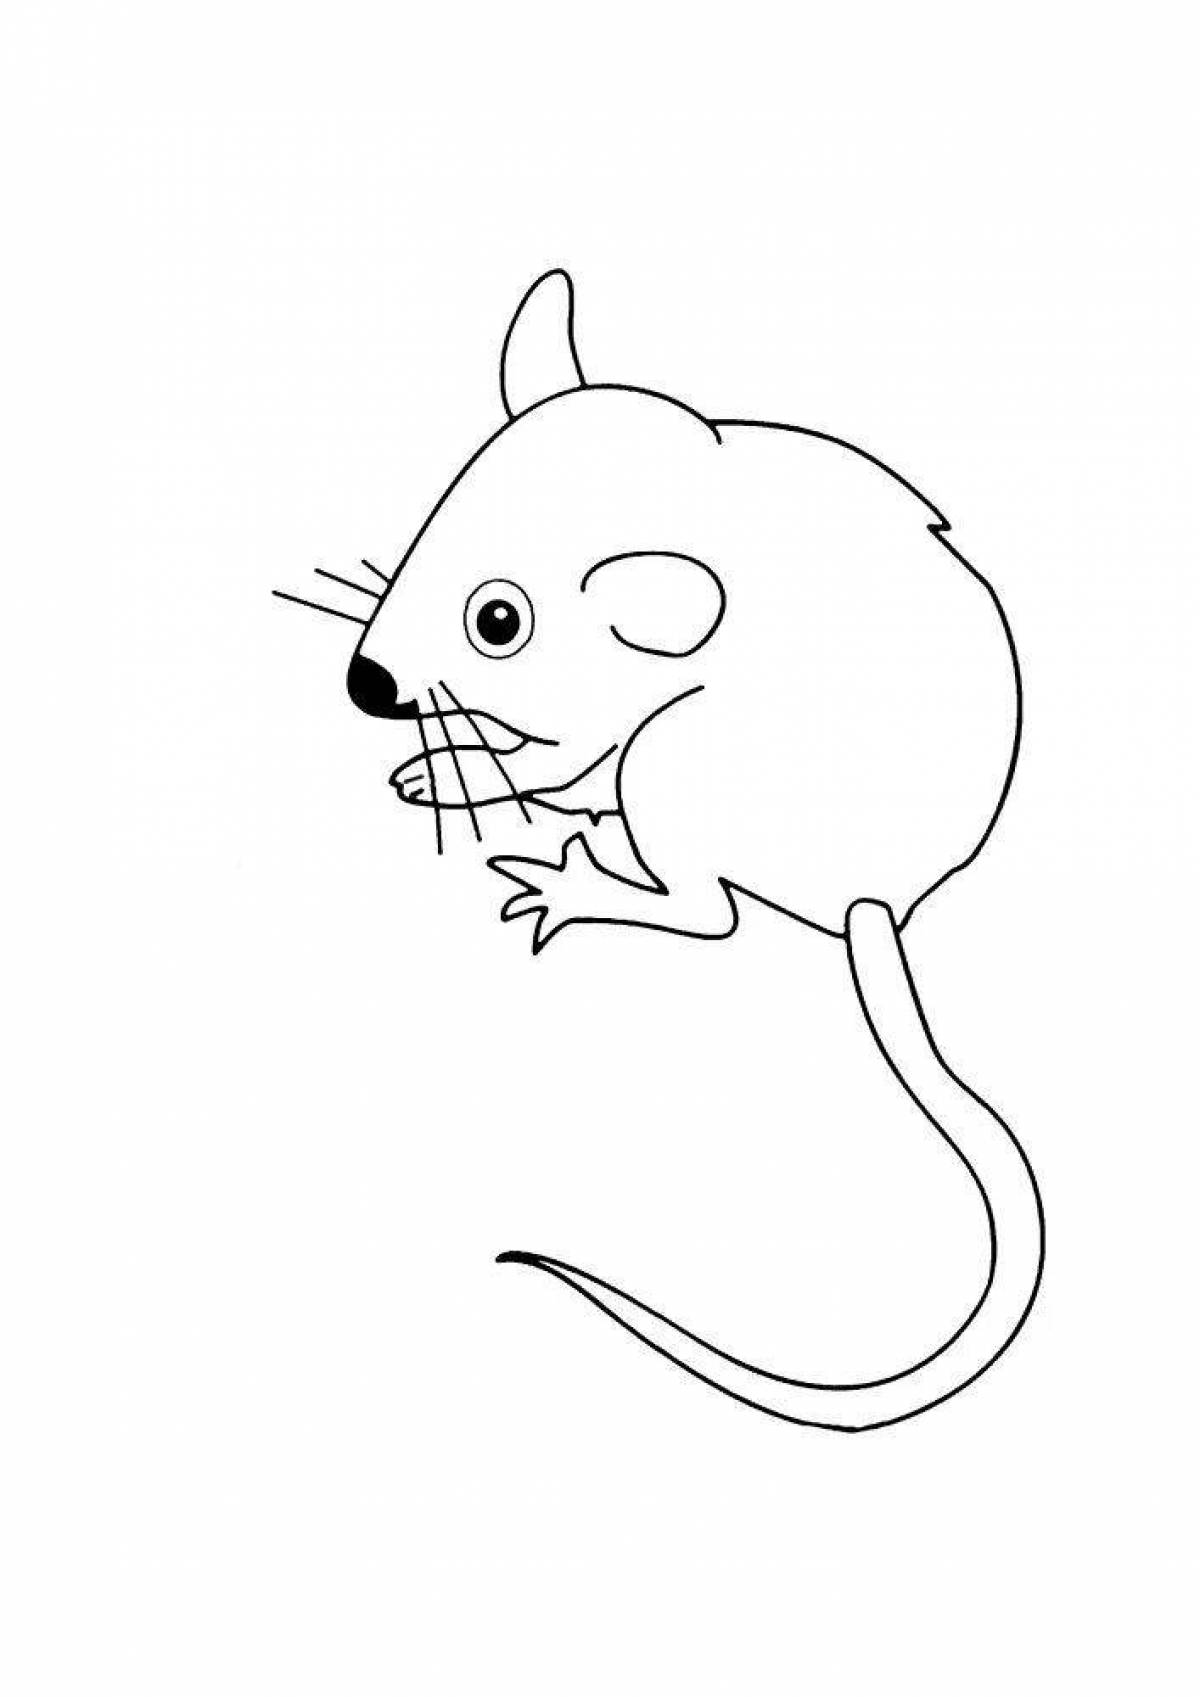 Раскраска мышь распечатать. Раскраска мышка. Мышь раскраска для детей. Мышка раскраска для детей. Мышь раскраска для малышей.